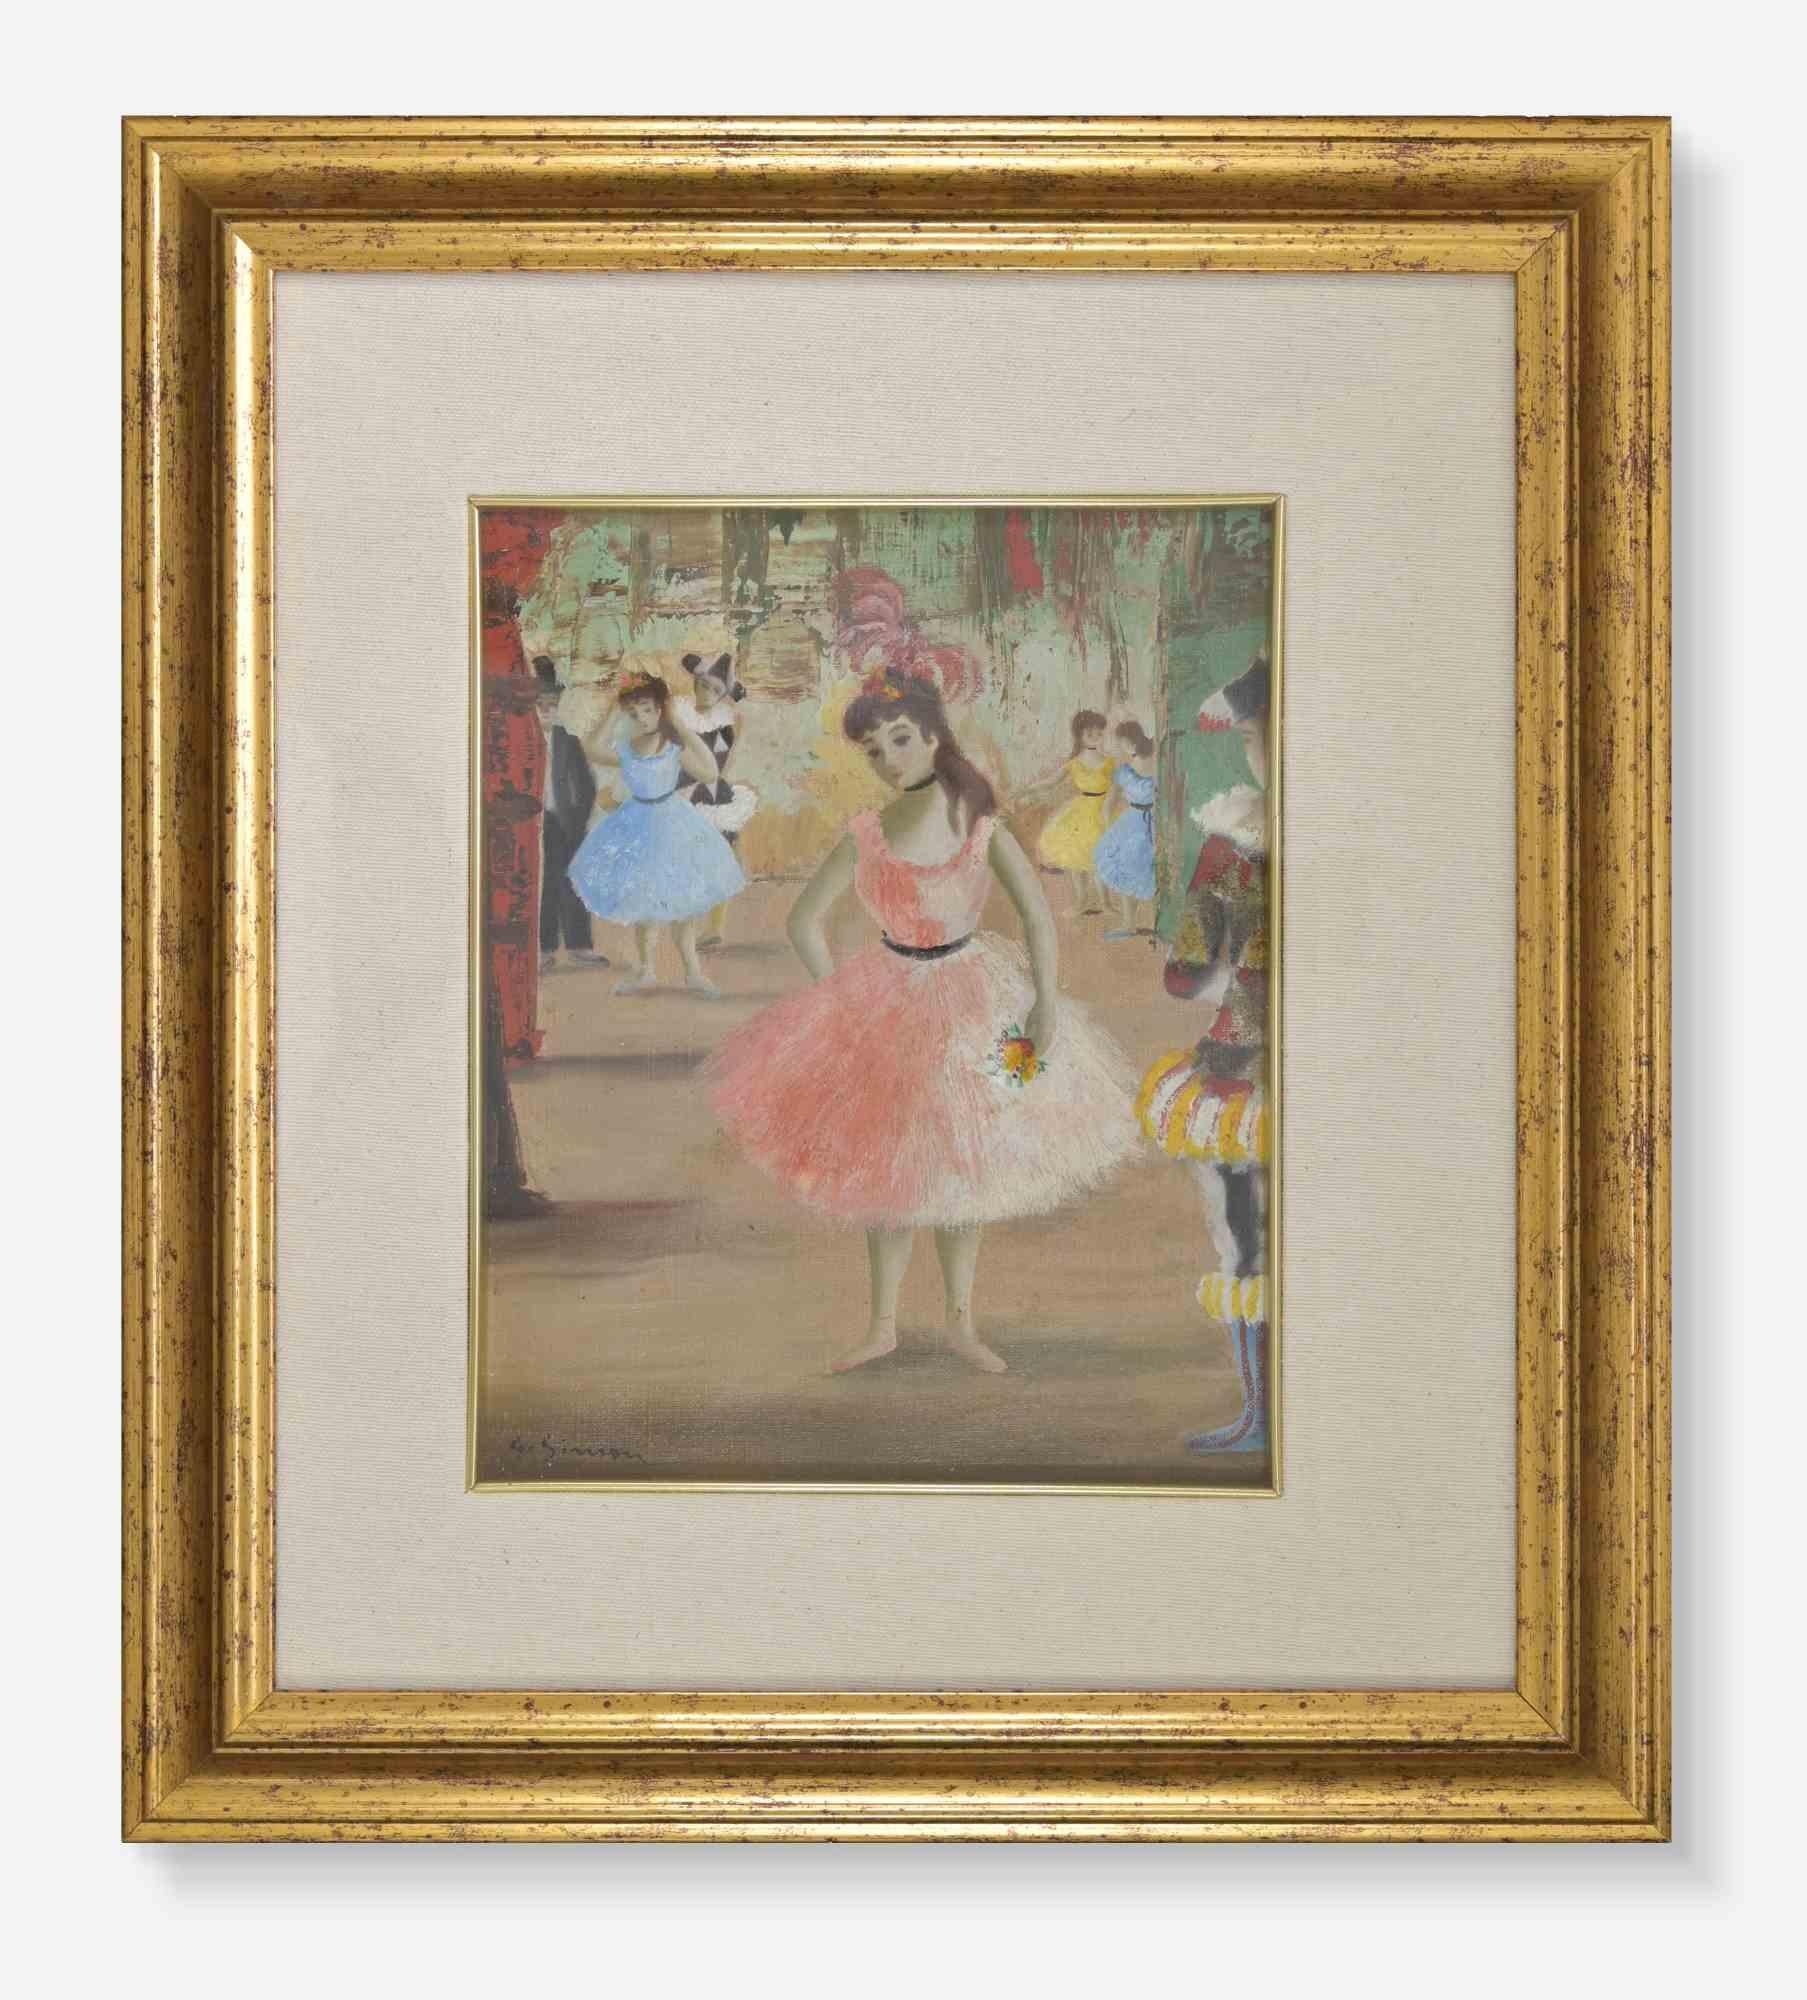 Tänzerin am Theater  Gemälde von Simon Georgette – Gemälde des frühen 20. Jahrhunderts 